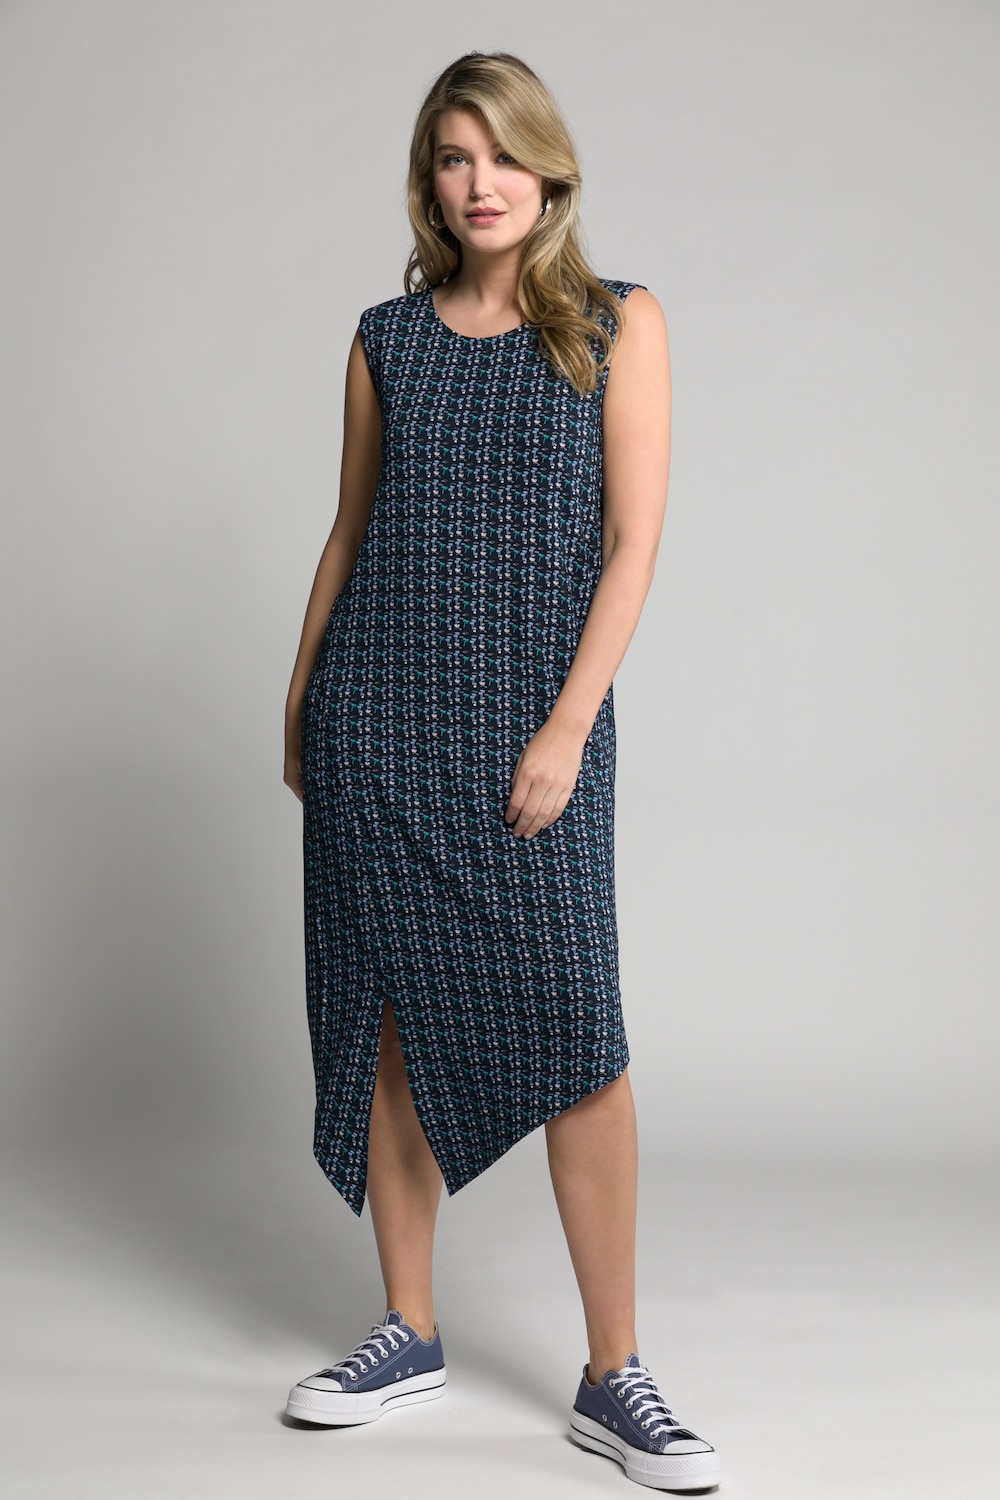 Plus Size Mini Palm Print Asymmetric Hem Stretch Knit Tank Dress, Woman, blue, size: 16/18, viscose, Ulla Popken